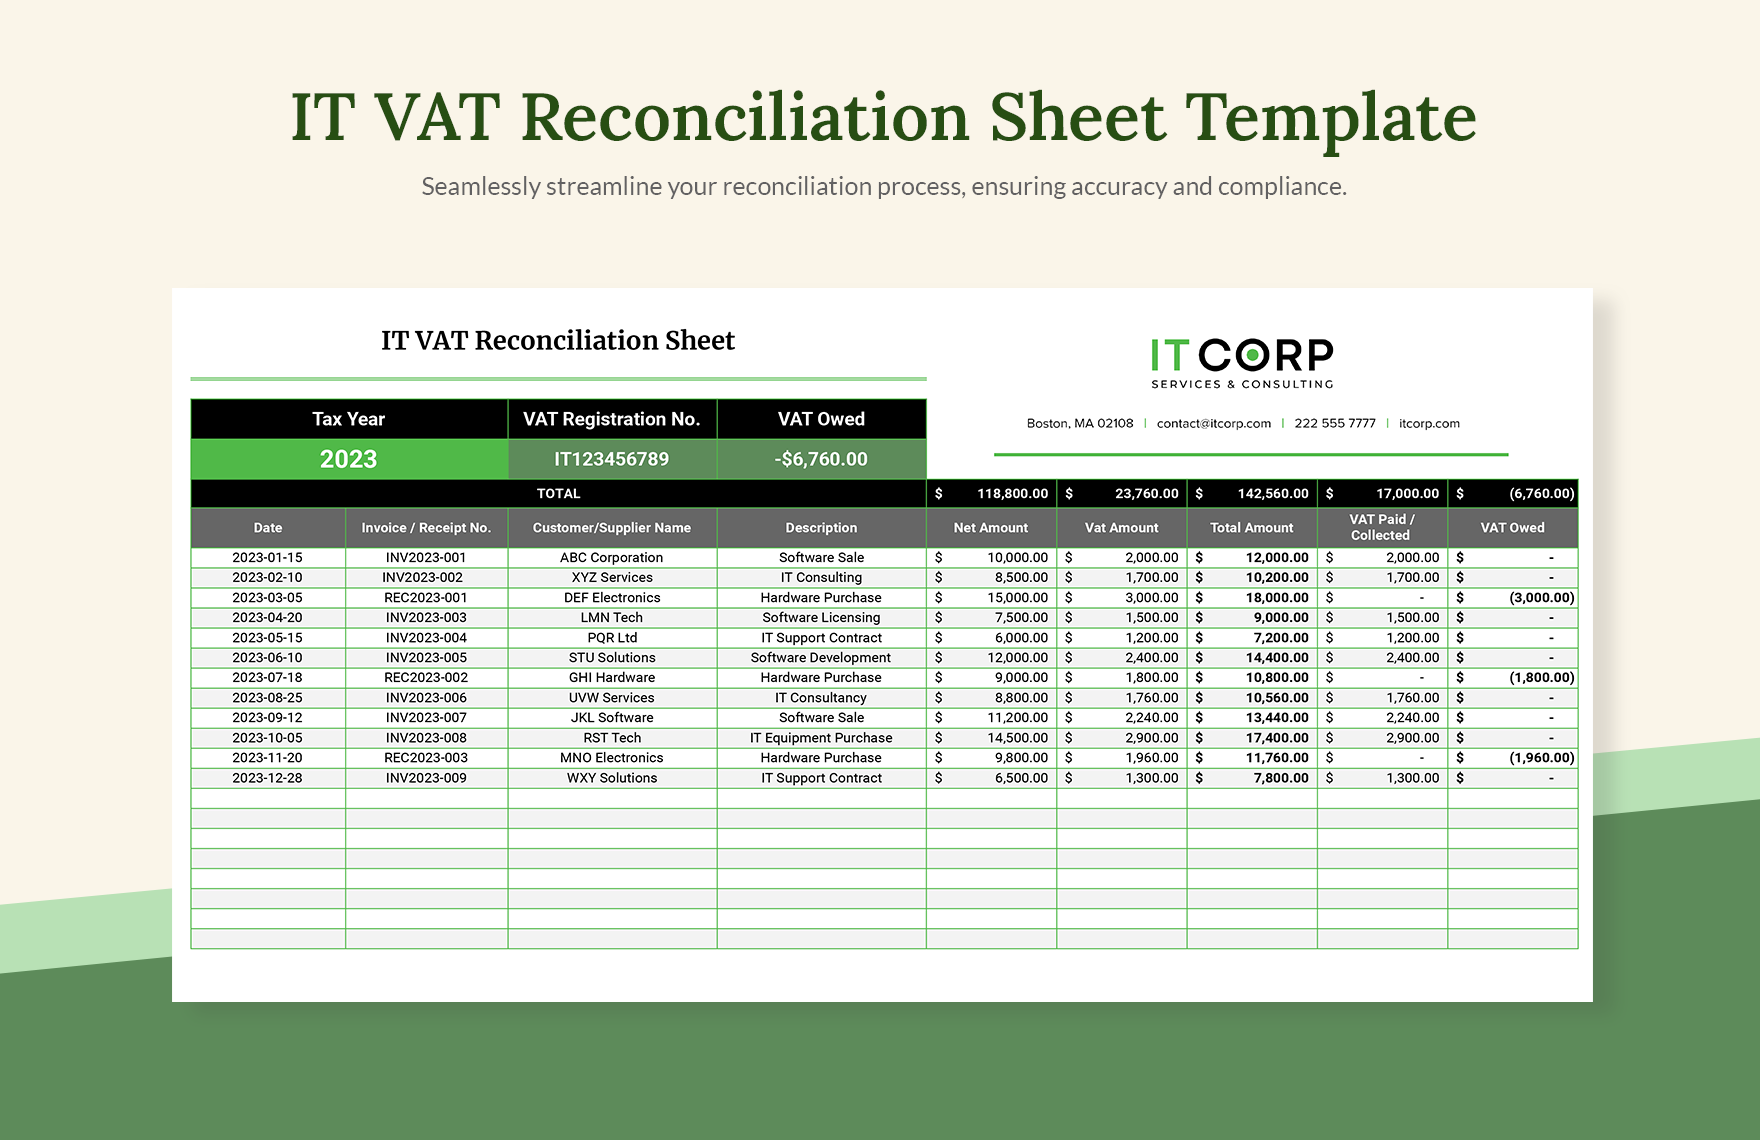 IT VAT Reconciliation Sheet Template